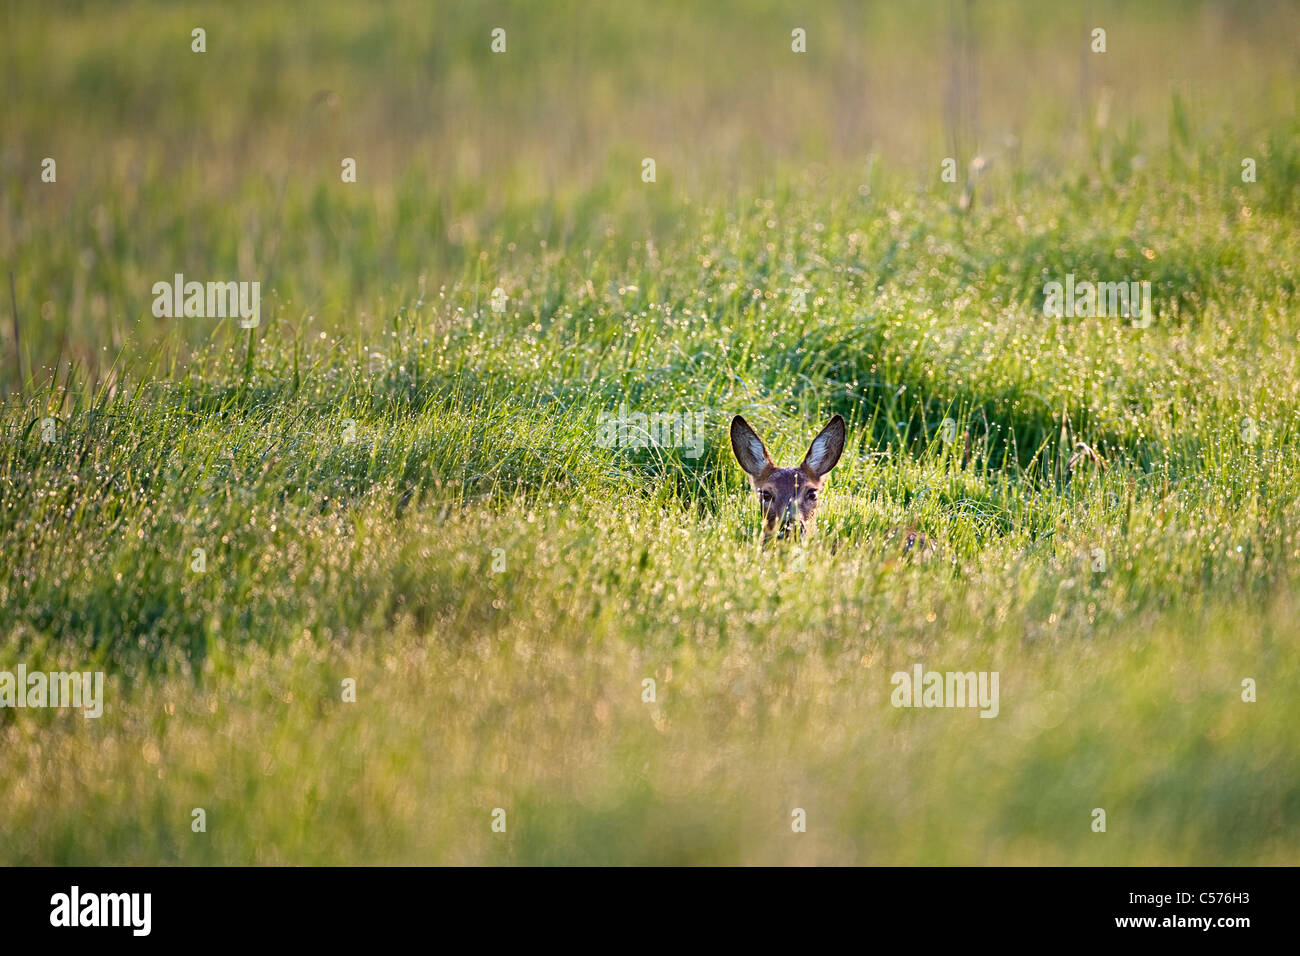 The Netherlands, Kalenberg, Doe or deer in national park called De Weerribben-Wieden. Stock Photo